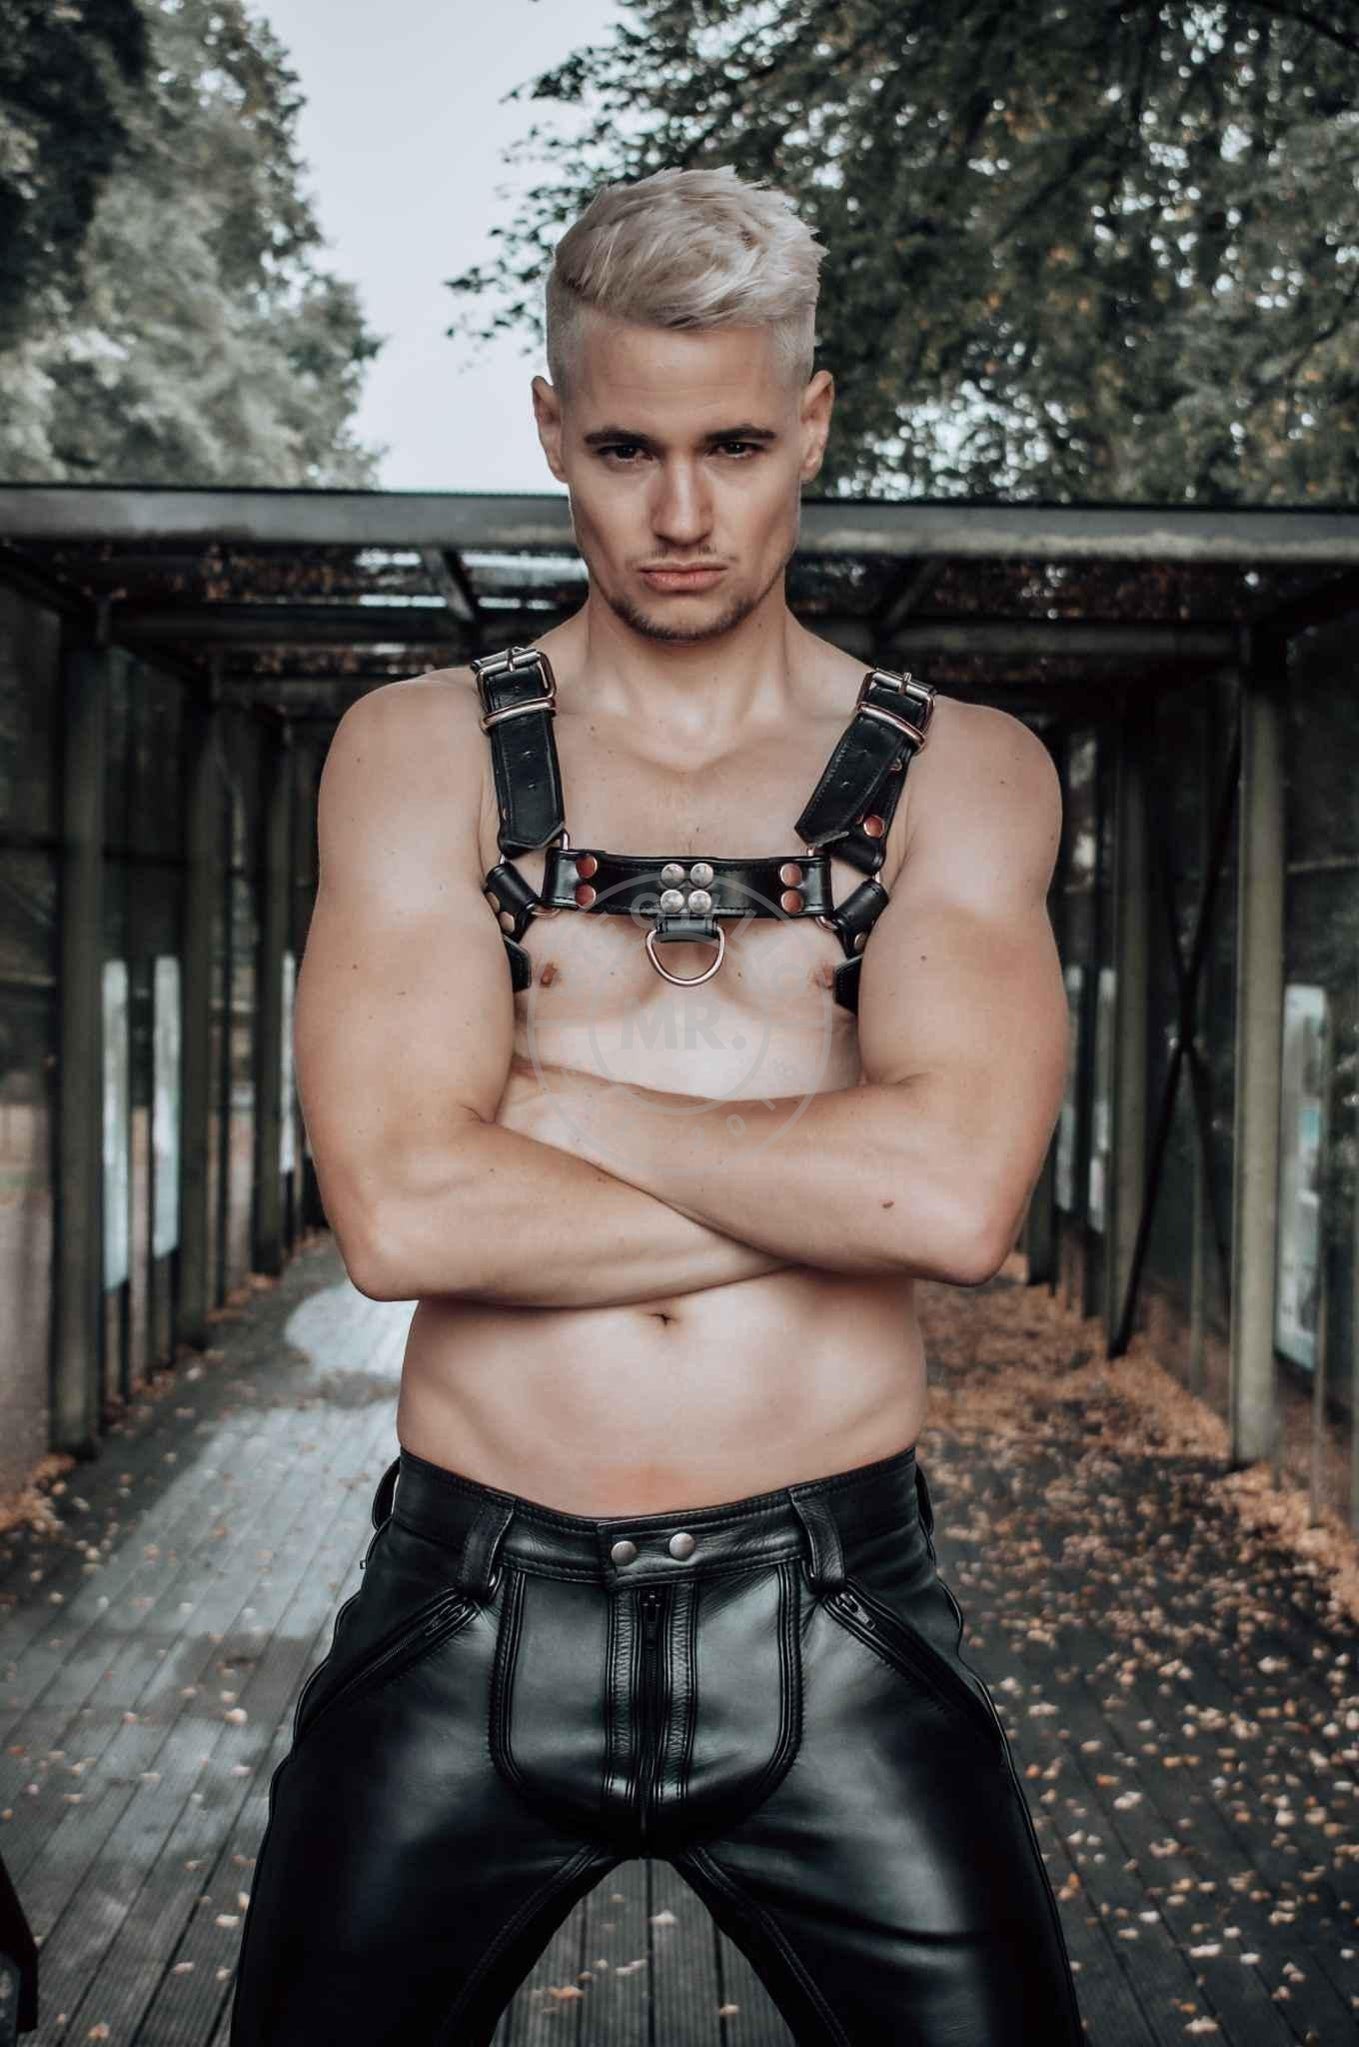 Black Leather Harness at MR. Riegillio